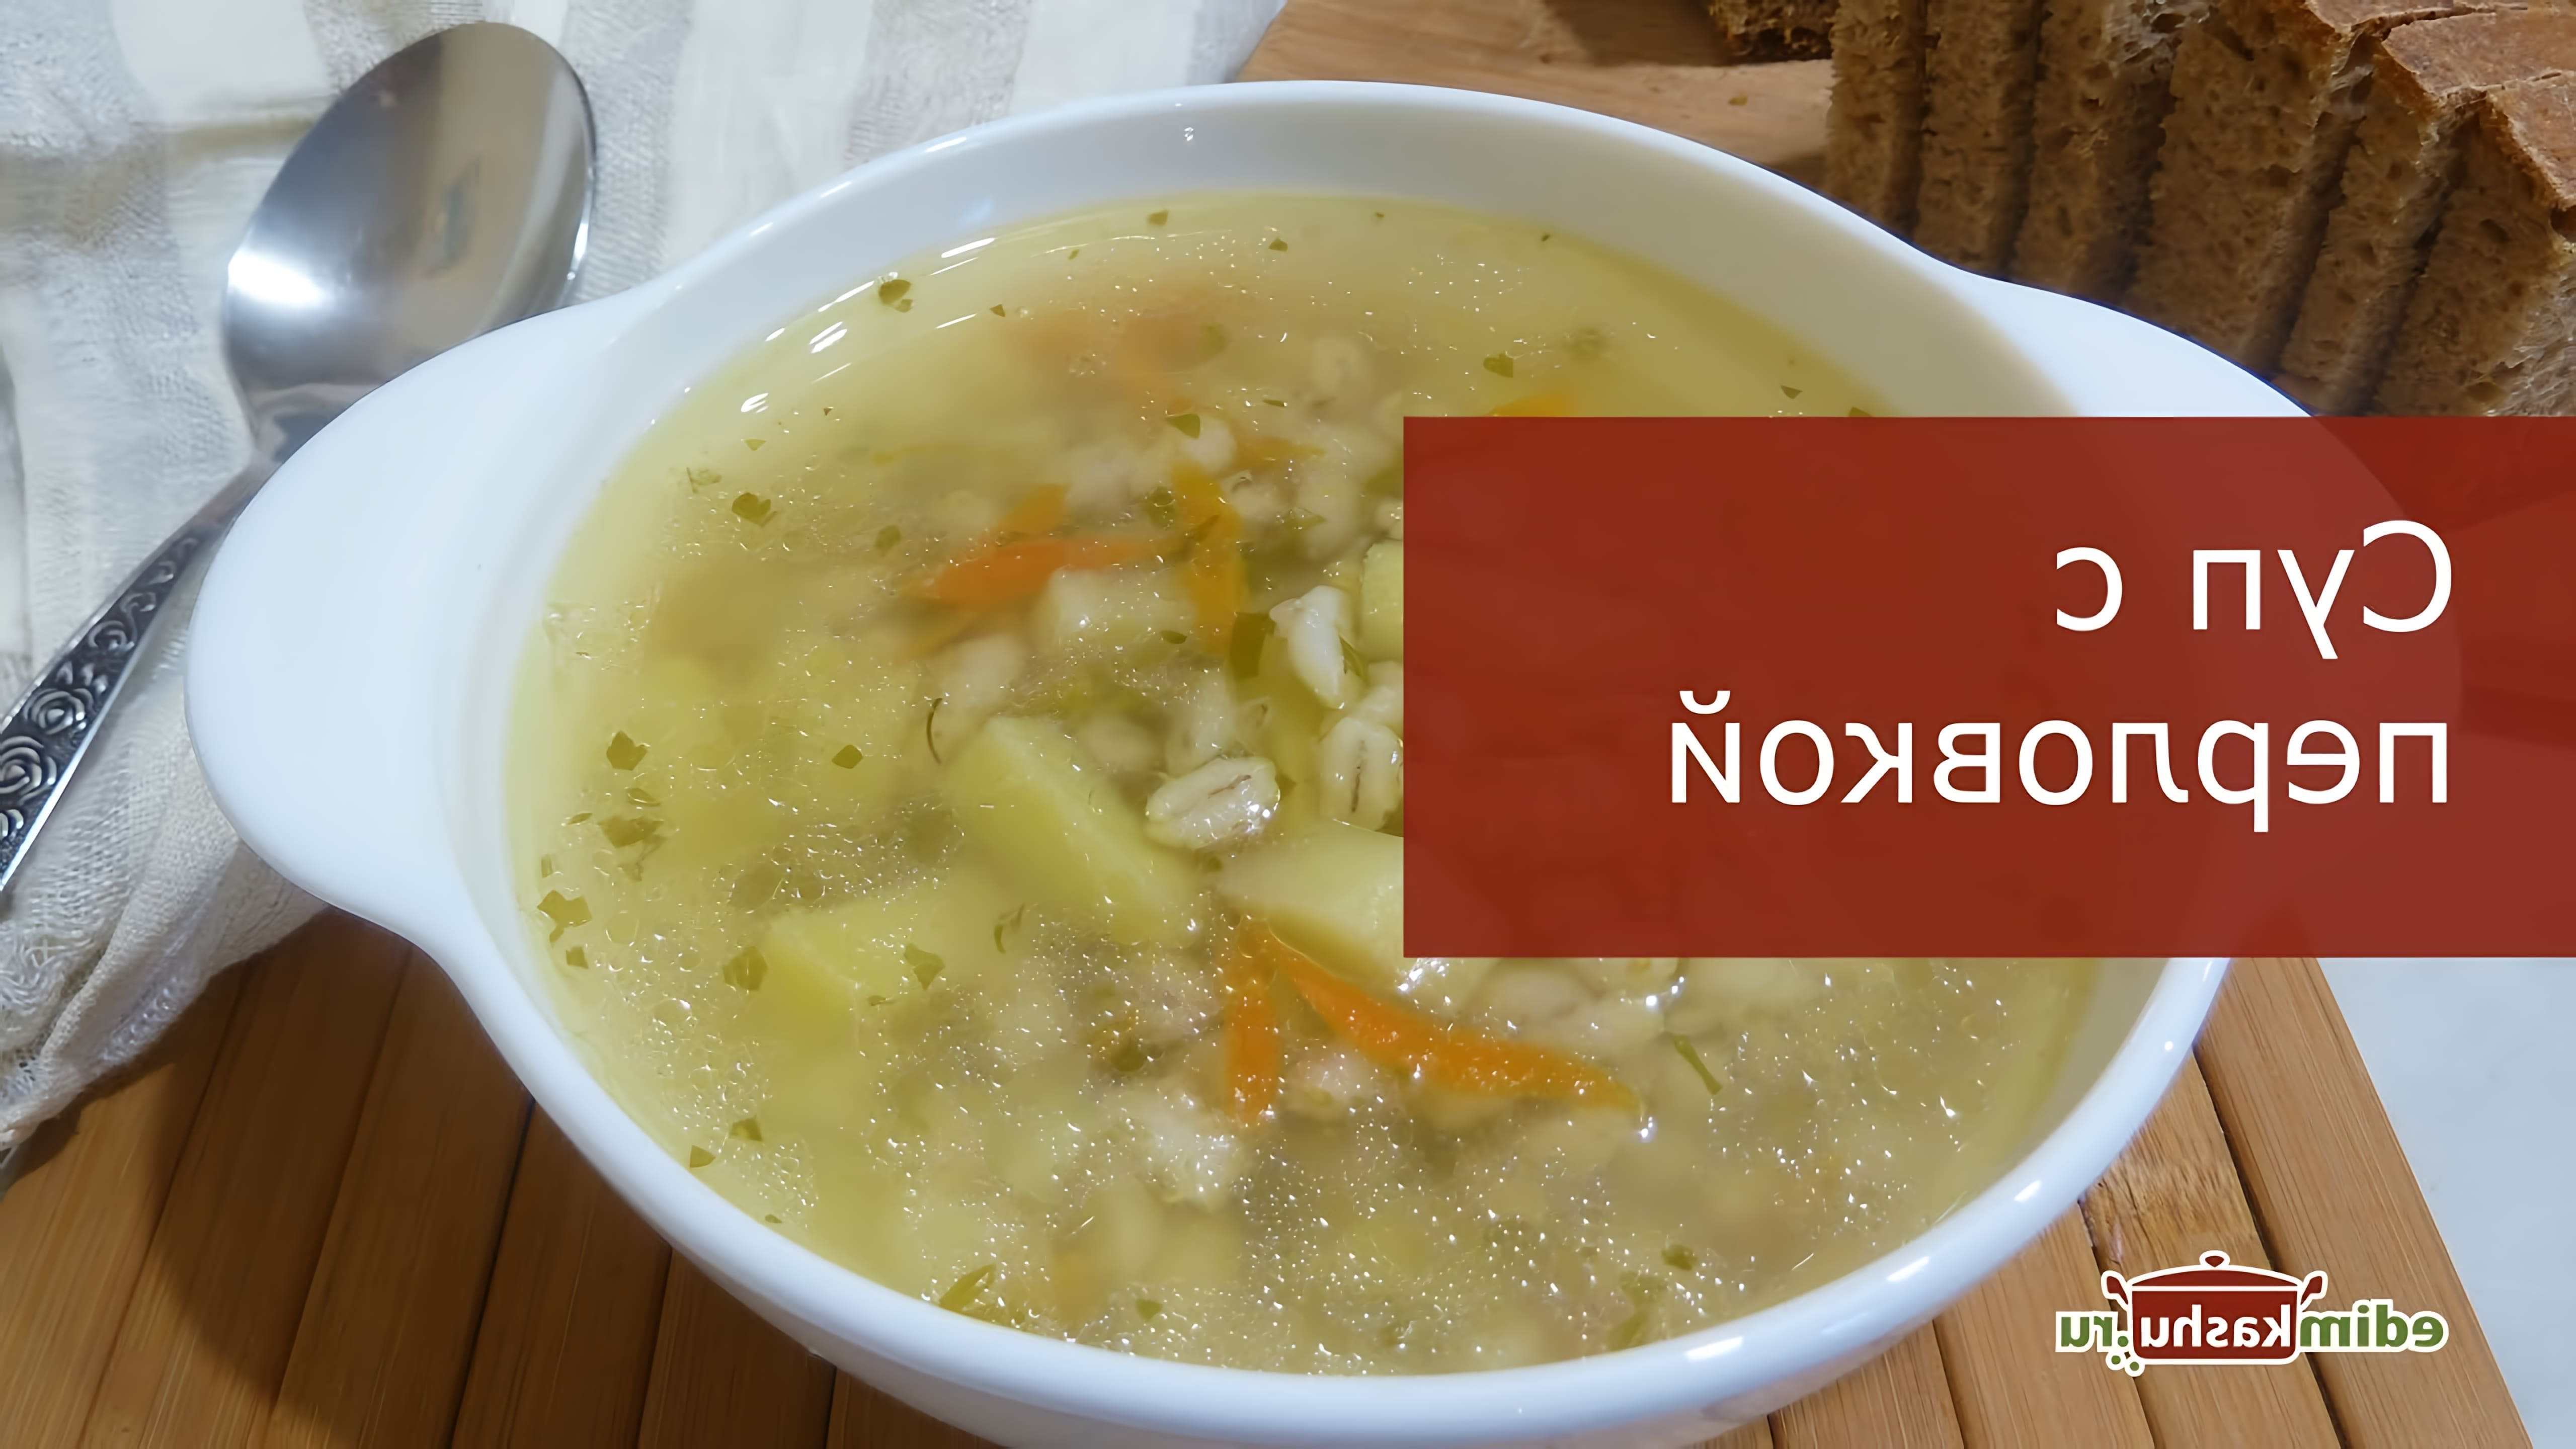 В этом видео Наталья Горбачева показывает, как приготовить куриный суп с перловкой